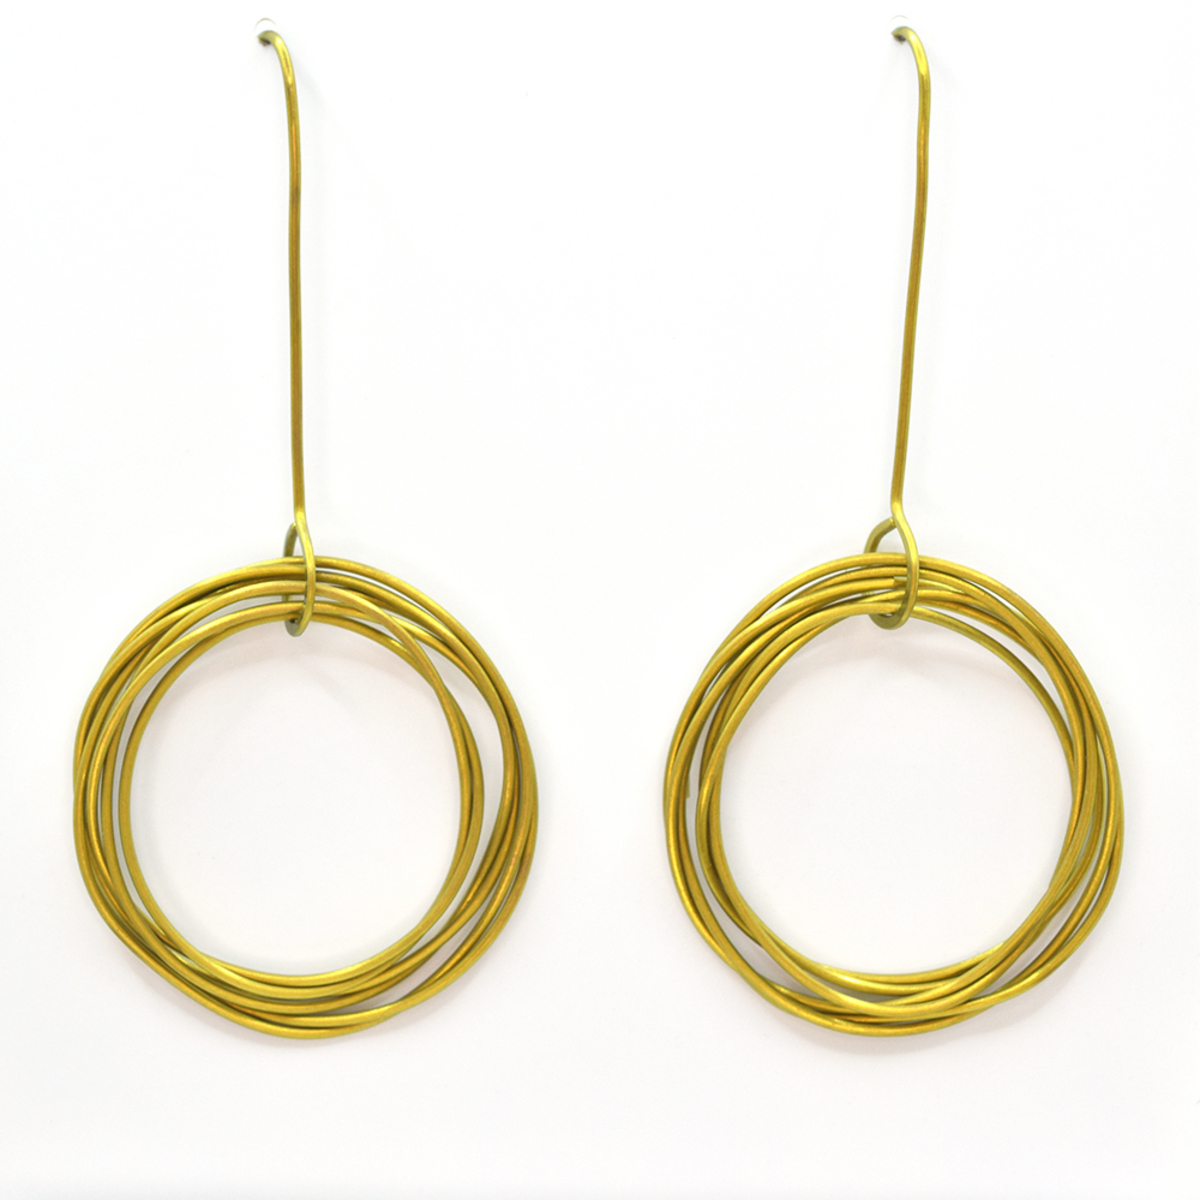 Orbit earrings (large). Gold.